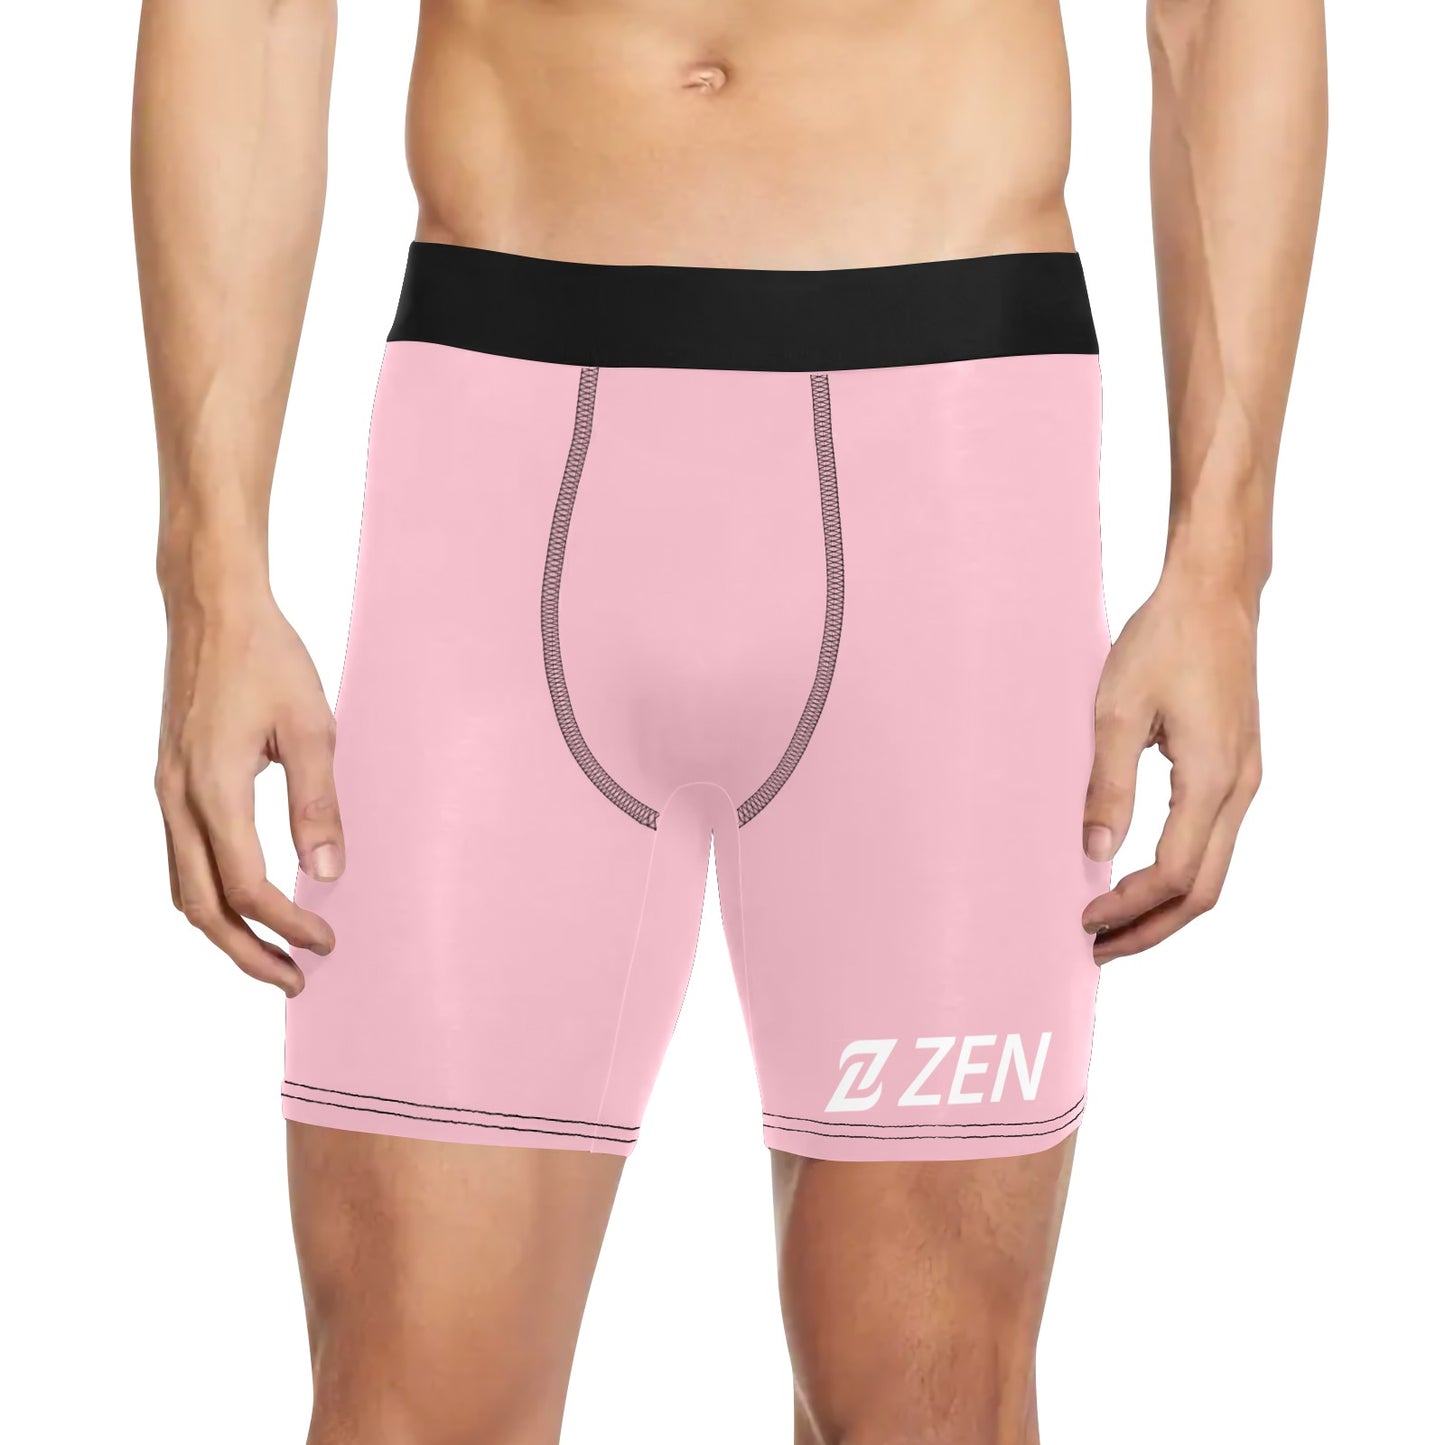 Zen Boxers Long -Pink